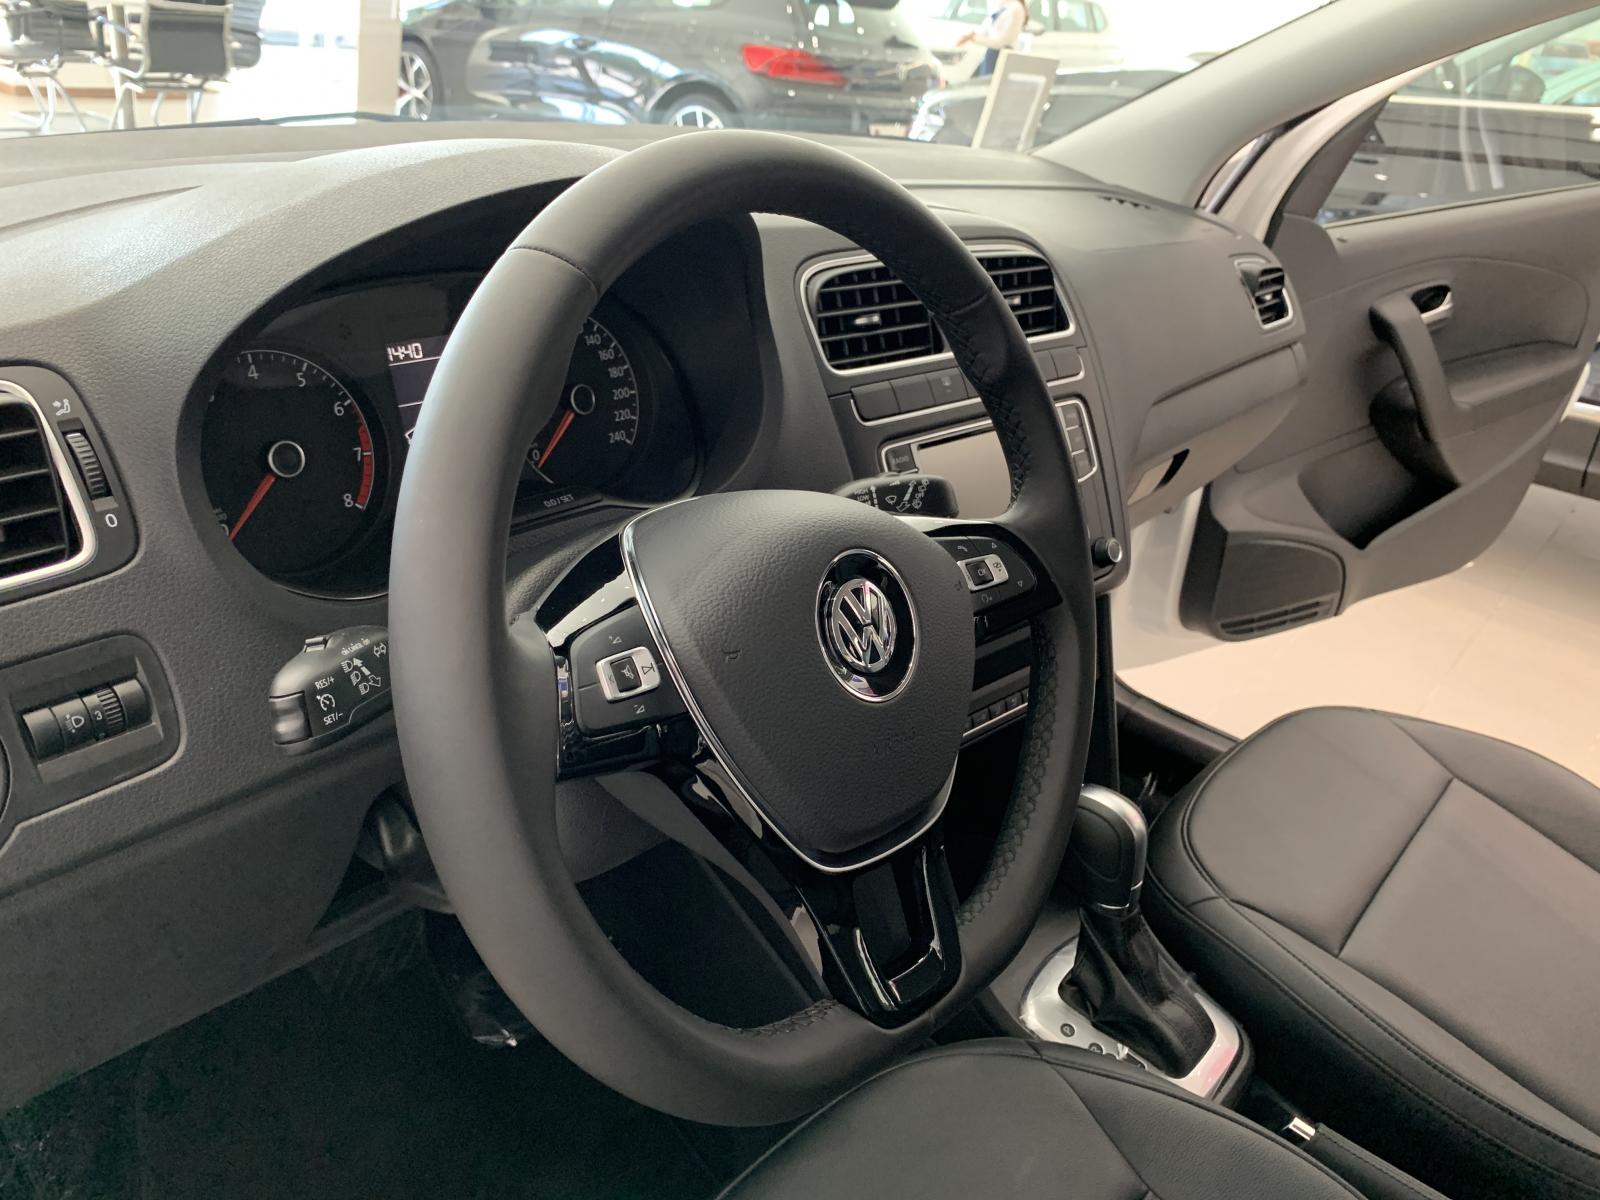 Siêu xe đô thị, Volkswagen Polo Hatchback ưu đãi đón tết 2021-8